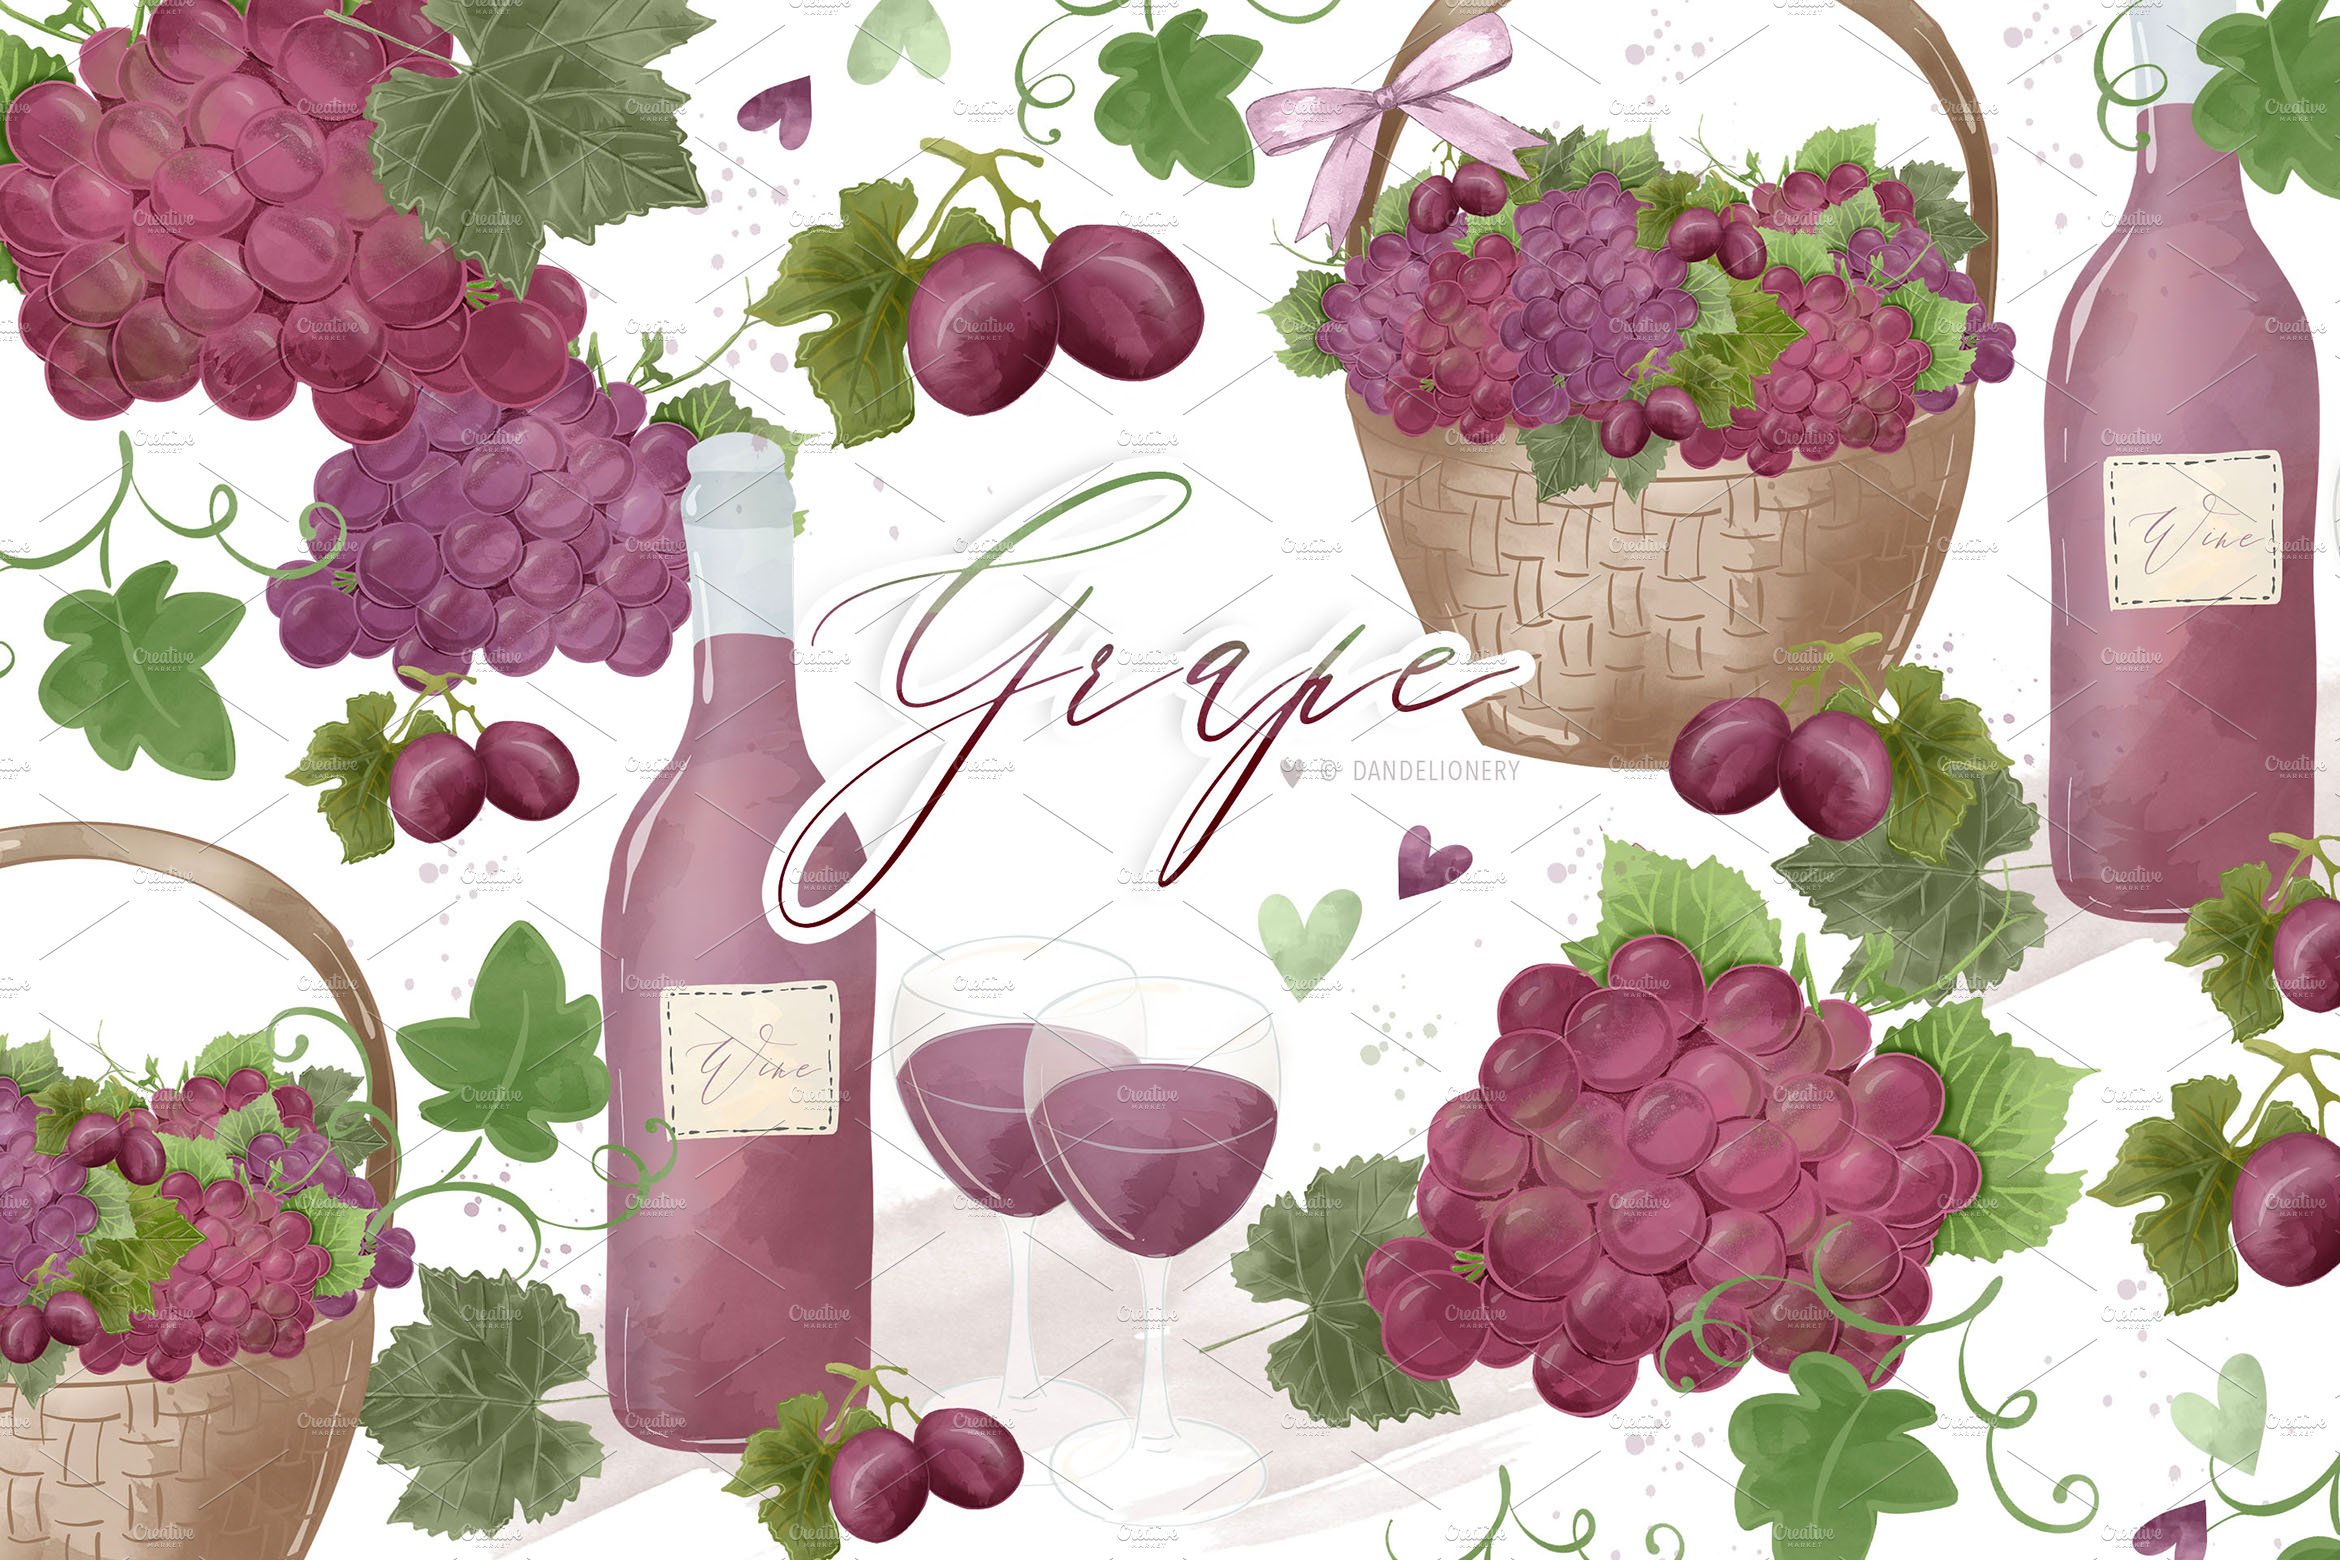 Grape design cover image.